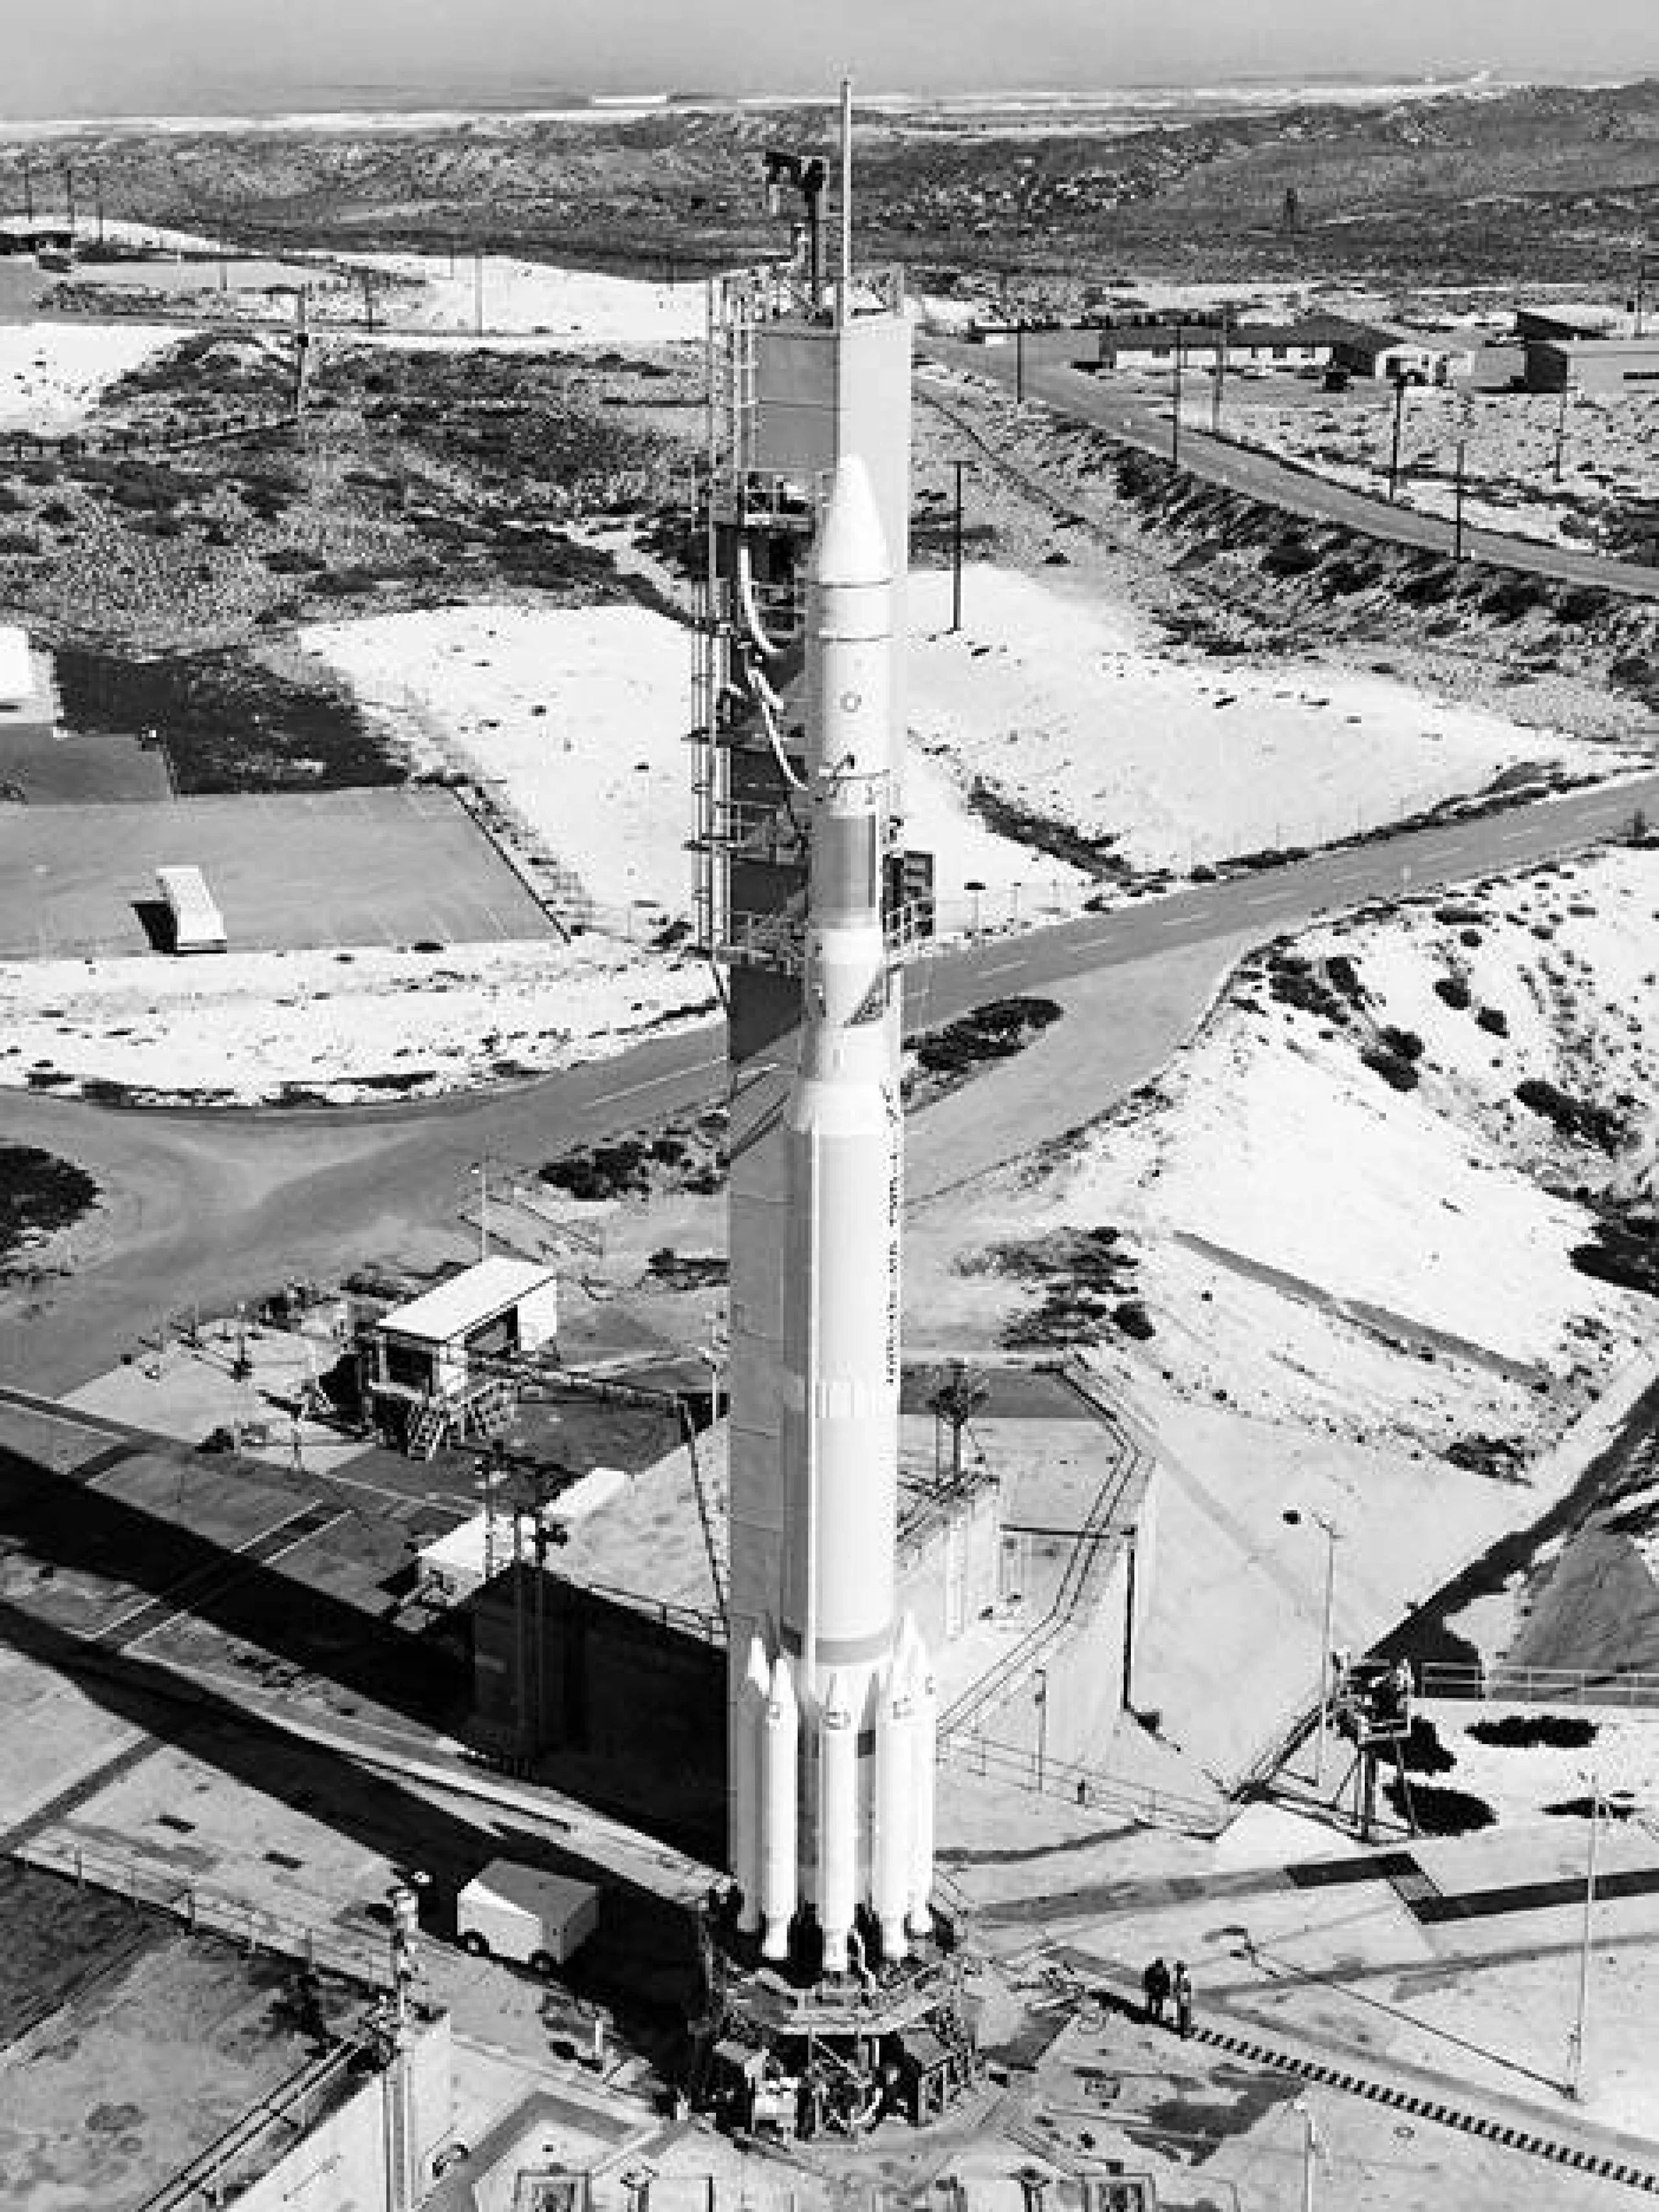 El Satélite con Tecnología para el estudio de los Recursos Terrestres (ERTS, más tarde rebautizado Landsat 1) fue lanzado a bordo de un Delta 900 desde la Base de la Fuerza Aérea de Vandenberg el 23 de julio de 1972. Créditos: Fotografía de la NASA por cortesía del equipo científico de Landsat